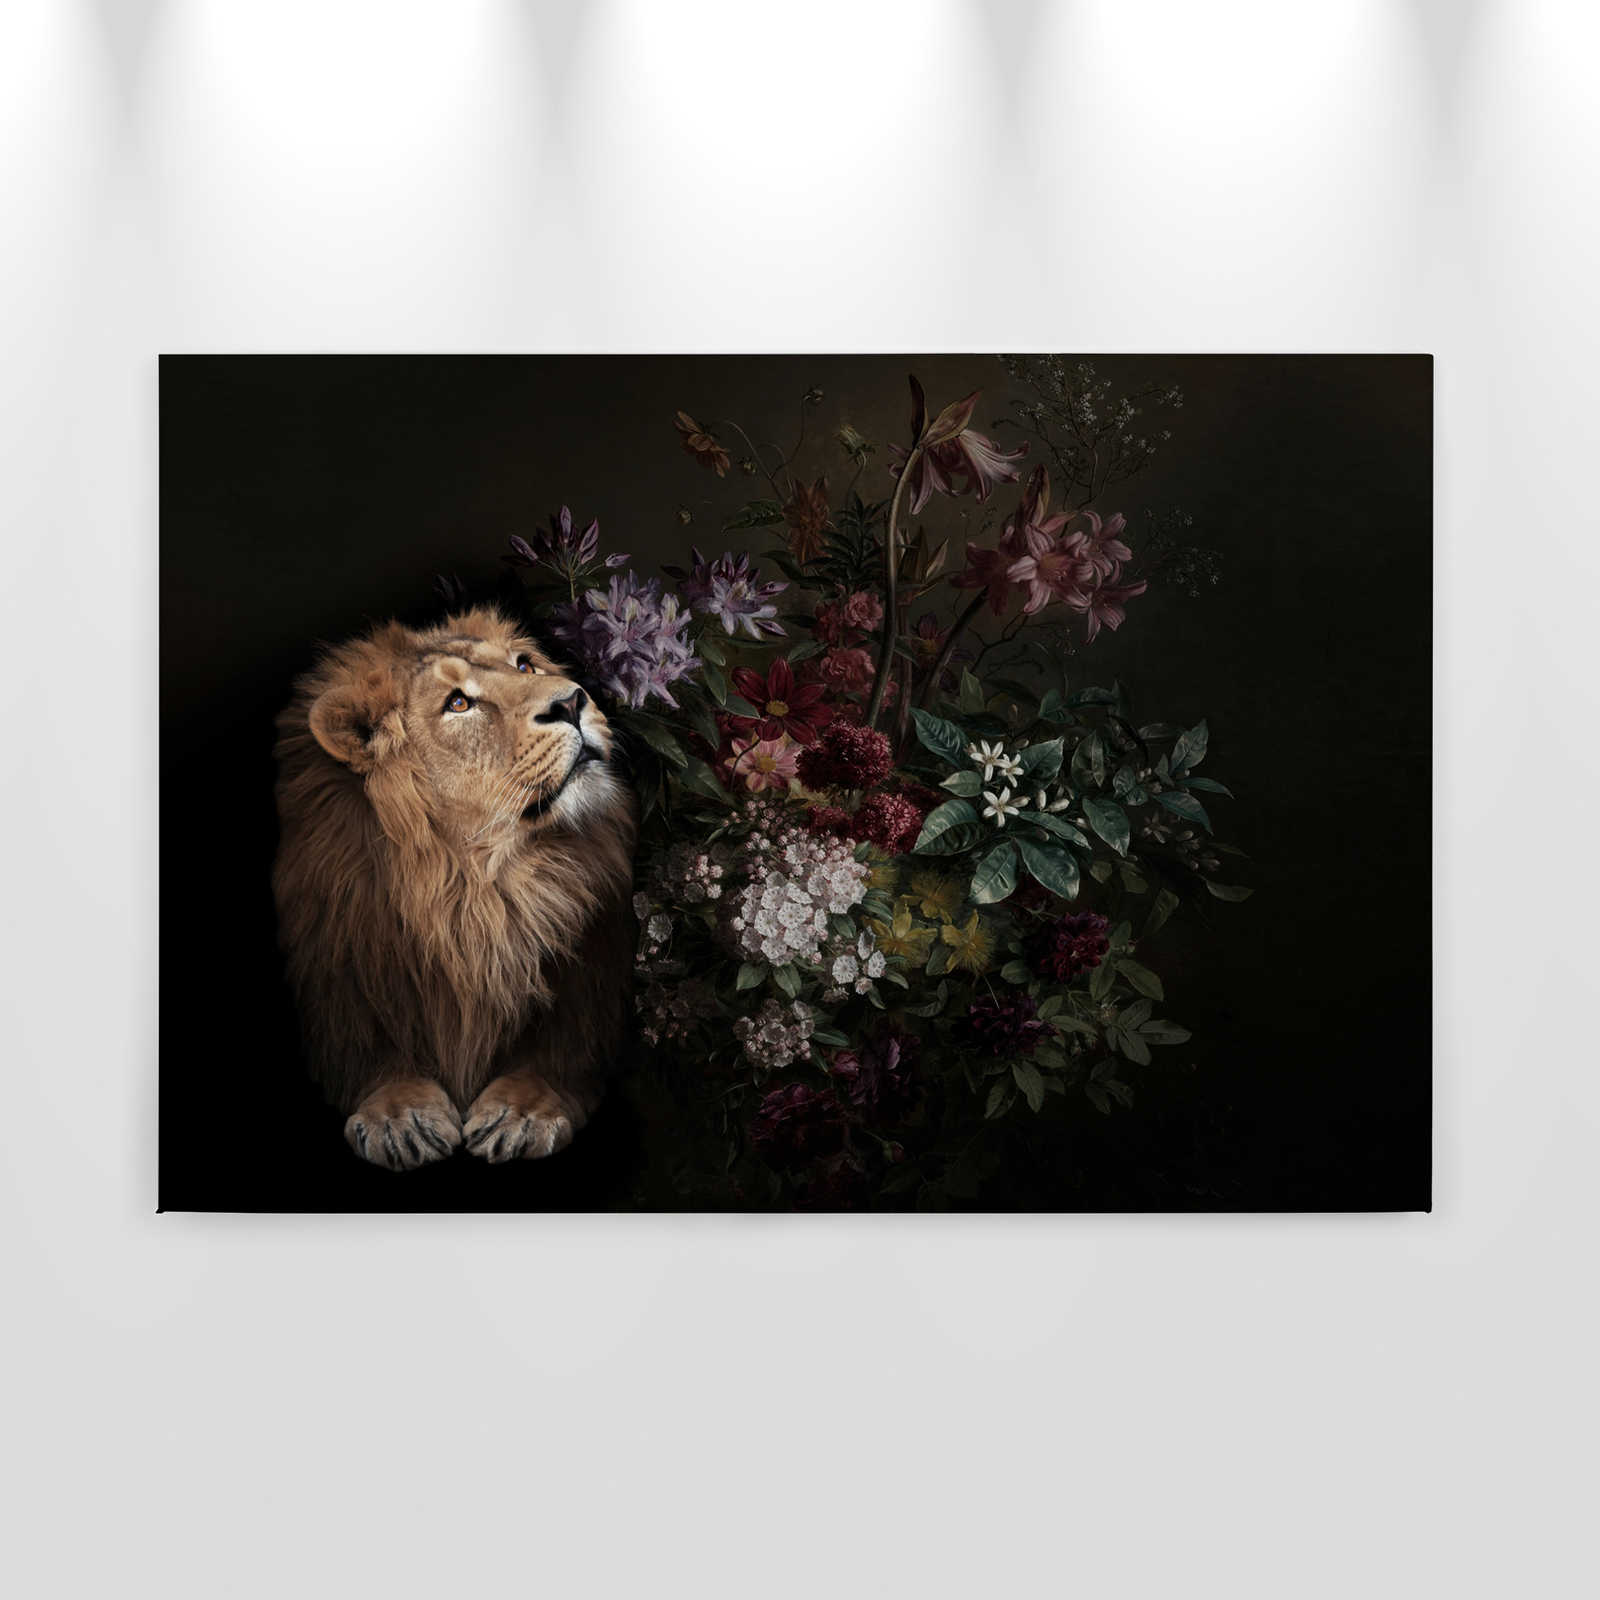             Leinwandbild Löwe Portrait mit Blumen – 0,90 m x 0,60 m
        